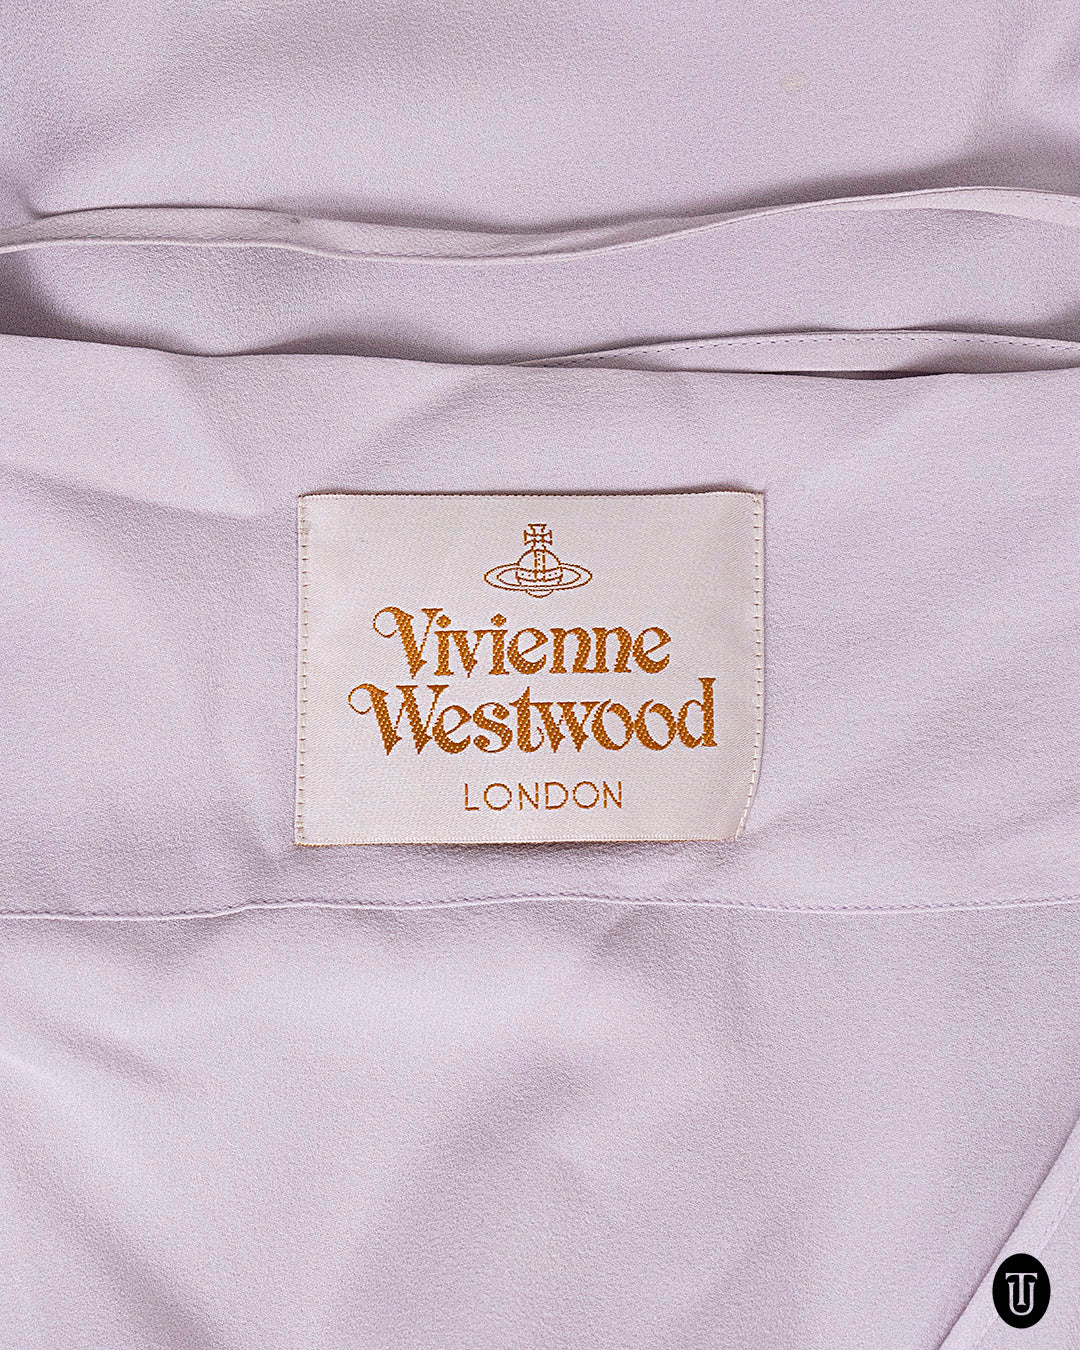 A 90s Vivienne Westwood slip dress S